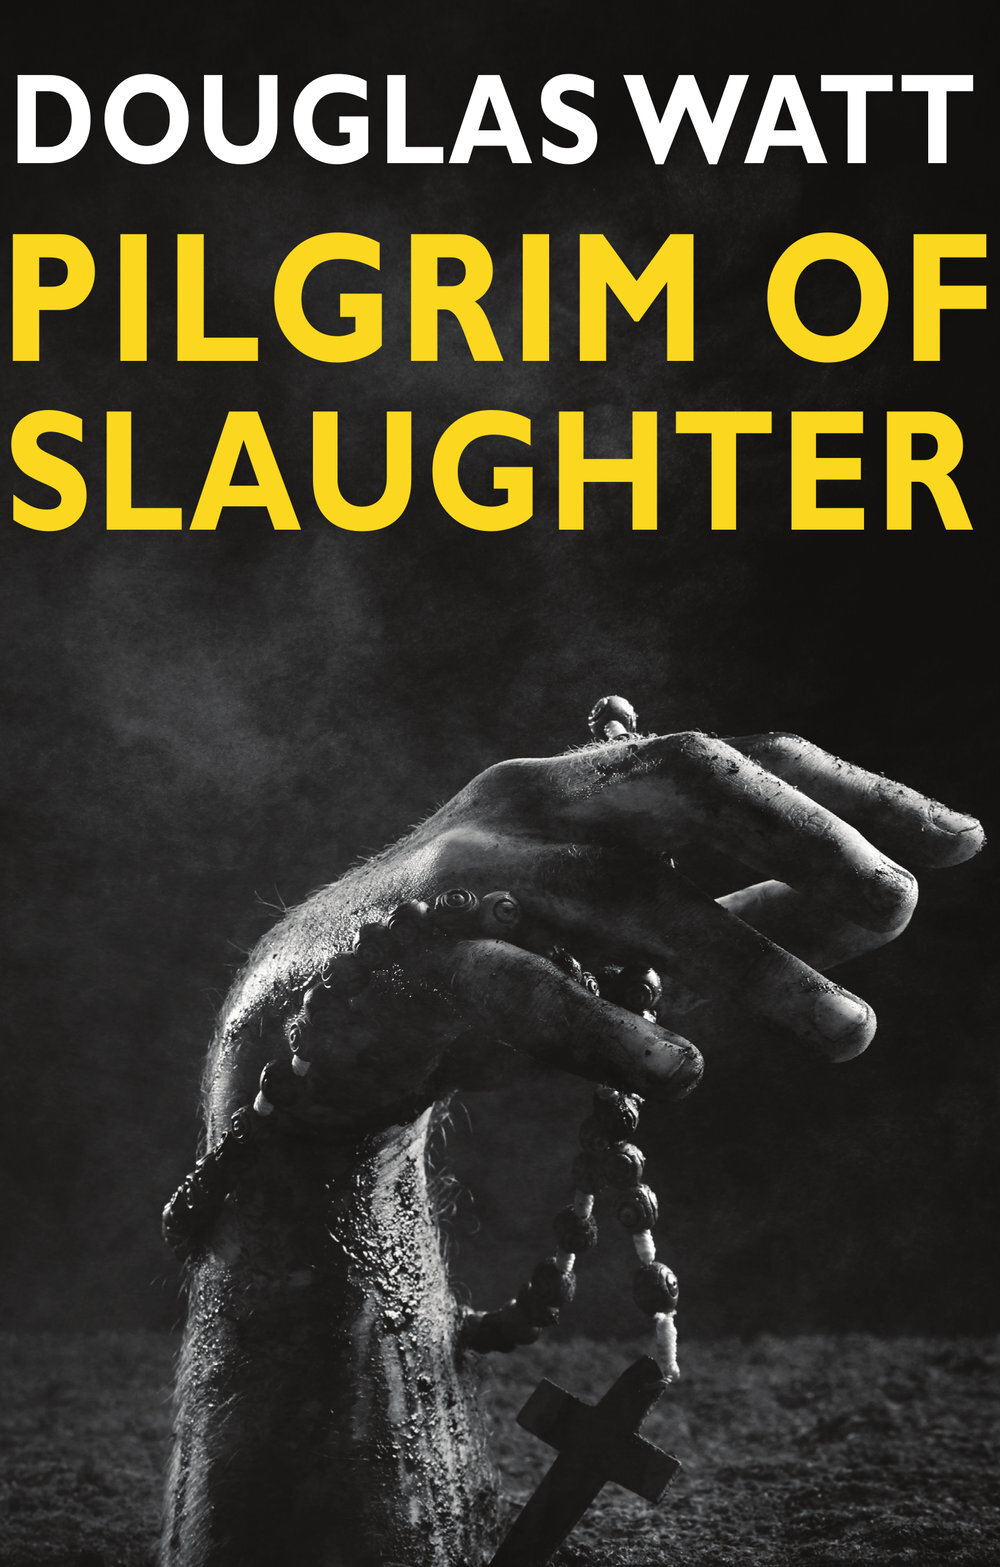 Pilgrim+of+Slaughter+reprint Luath Press.jpg